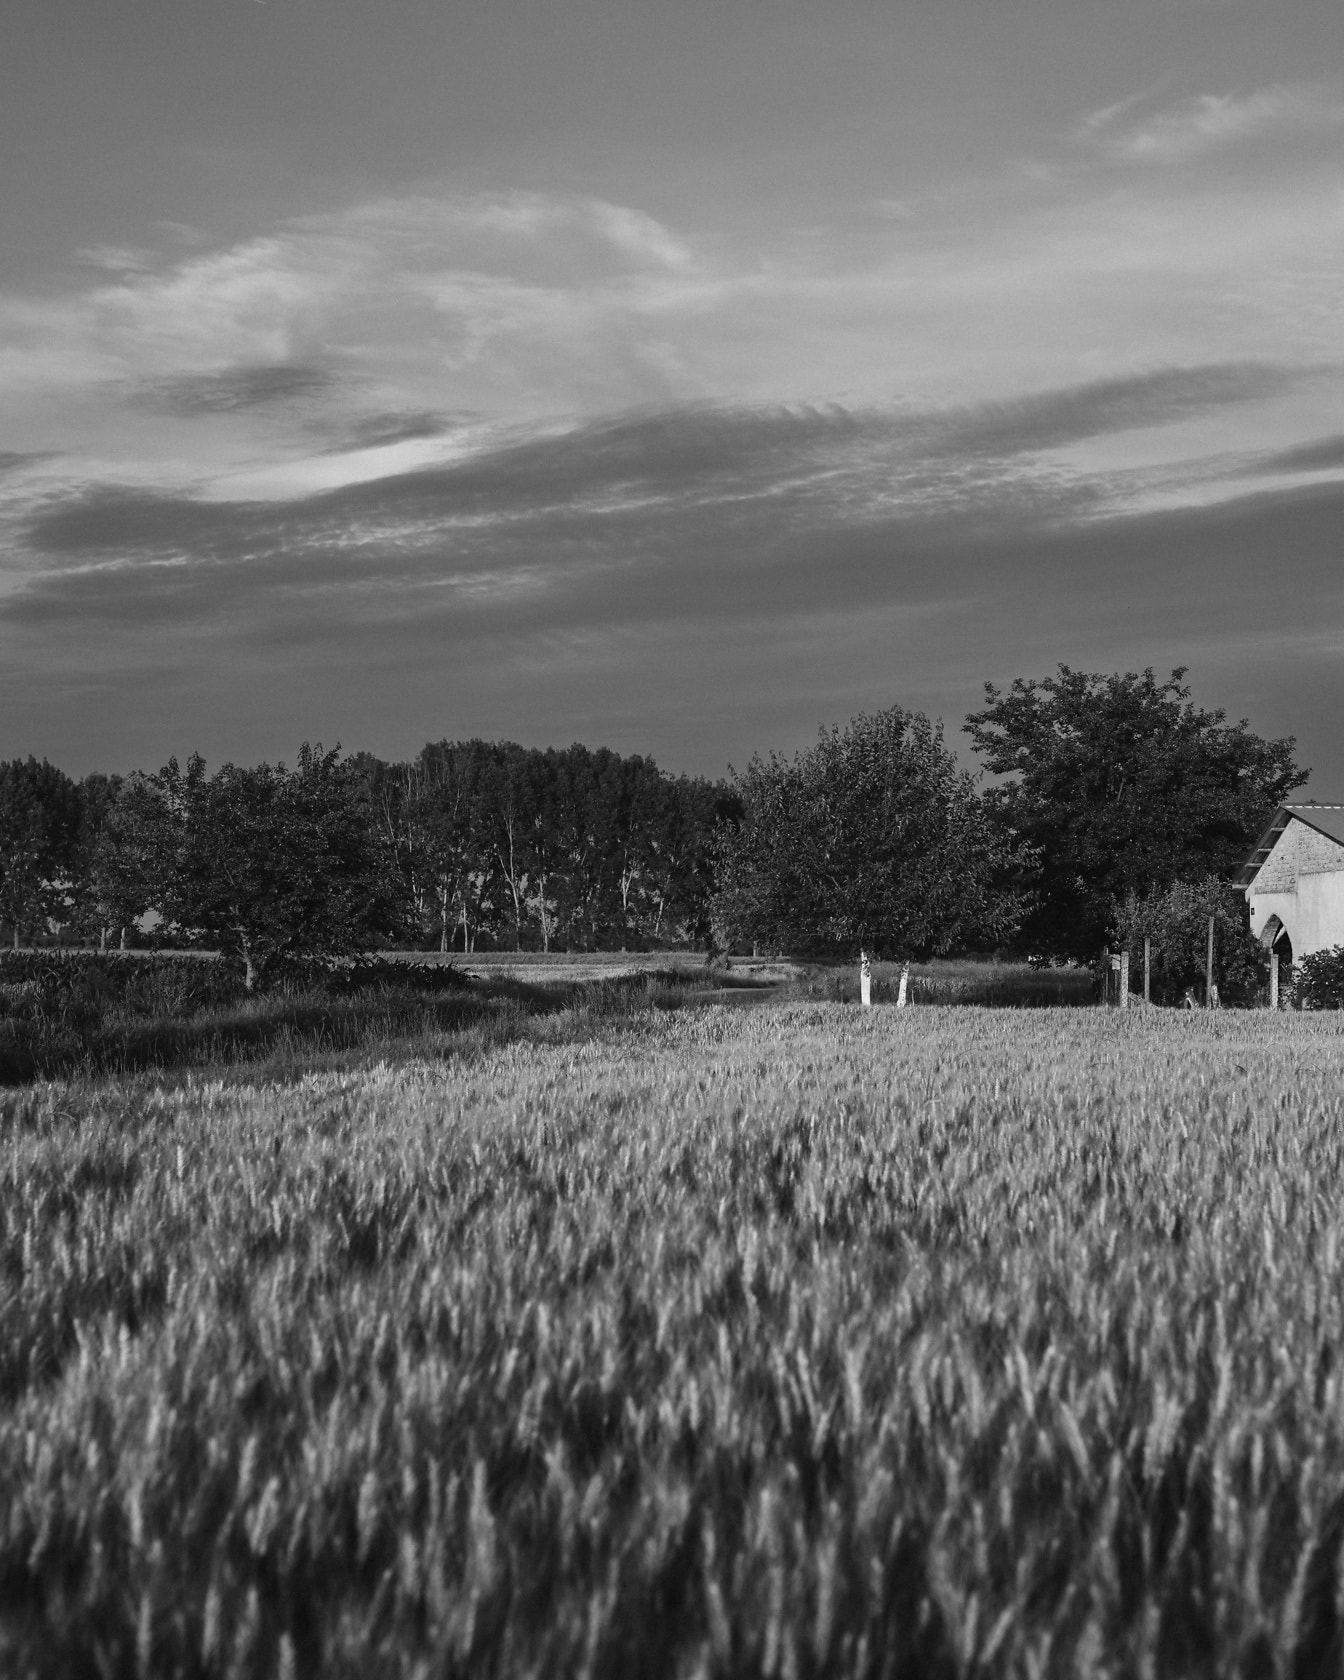 Foto hitam putih ladang gandum di lahan pertanian dengan rumah pertanian